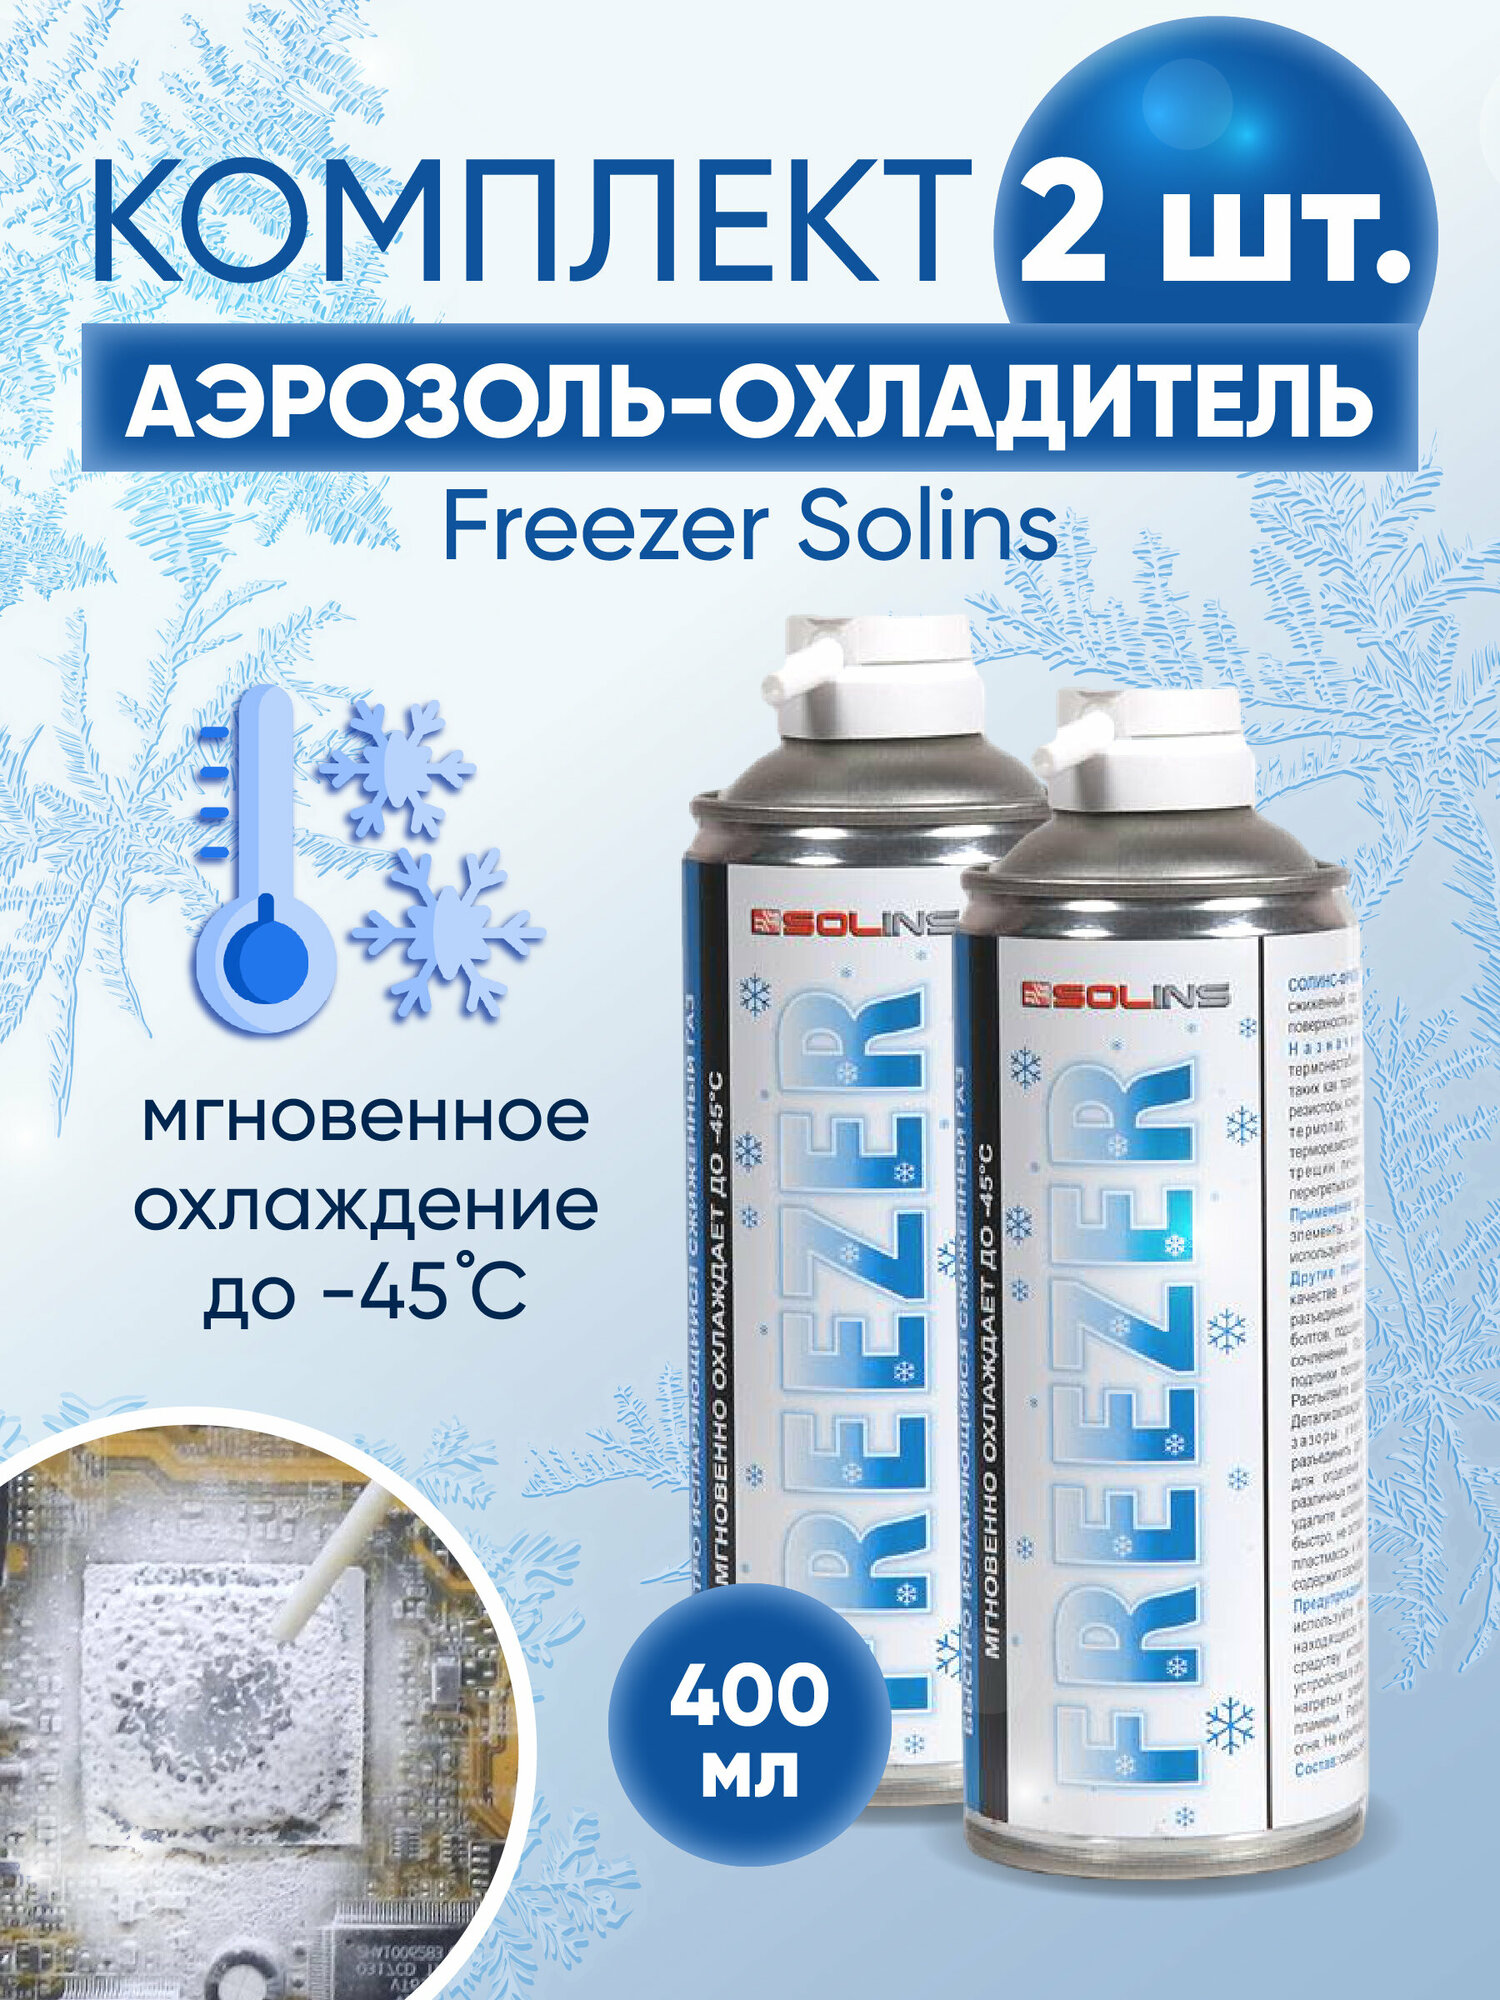 Комплект охладителя Freezer Solins объем 400мл (2 штуки)